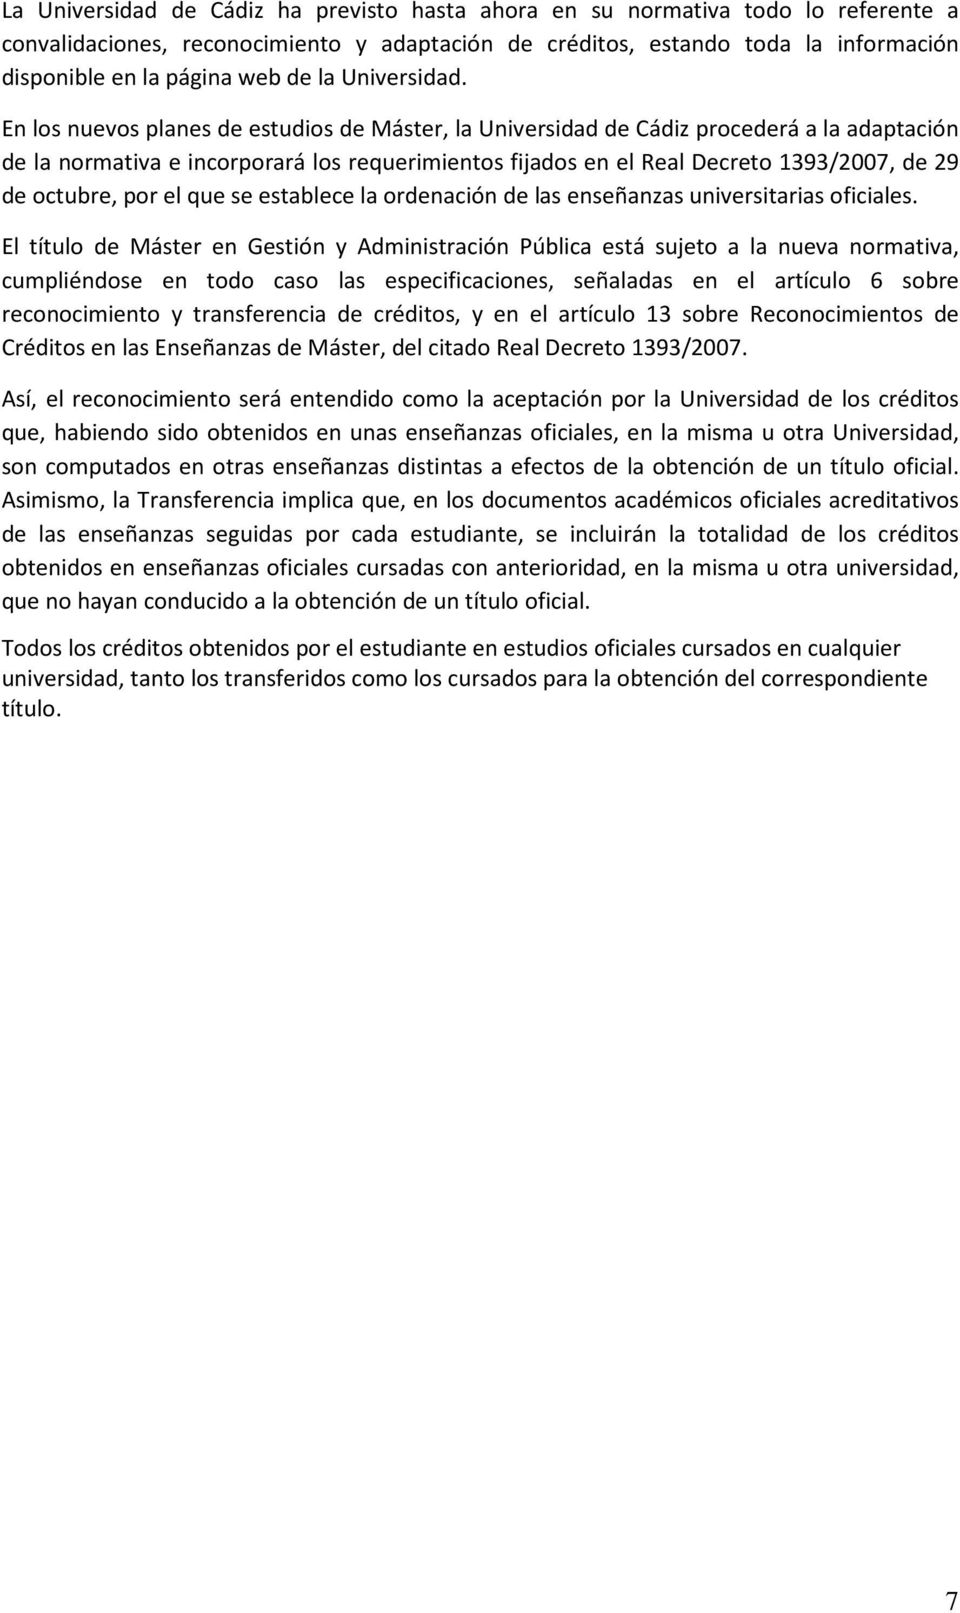 En los nuevos planes de estudios de Máster, la Universidad de Cádiz procederá a la adaptación de la normativa e incorporará los requerimientos fijados en el Real Decreto 1393/2007, de 29 de octubre,